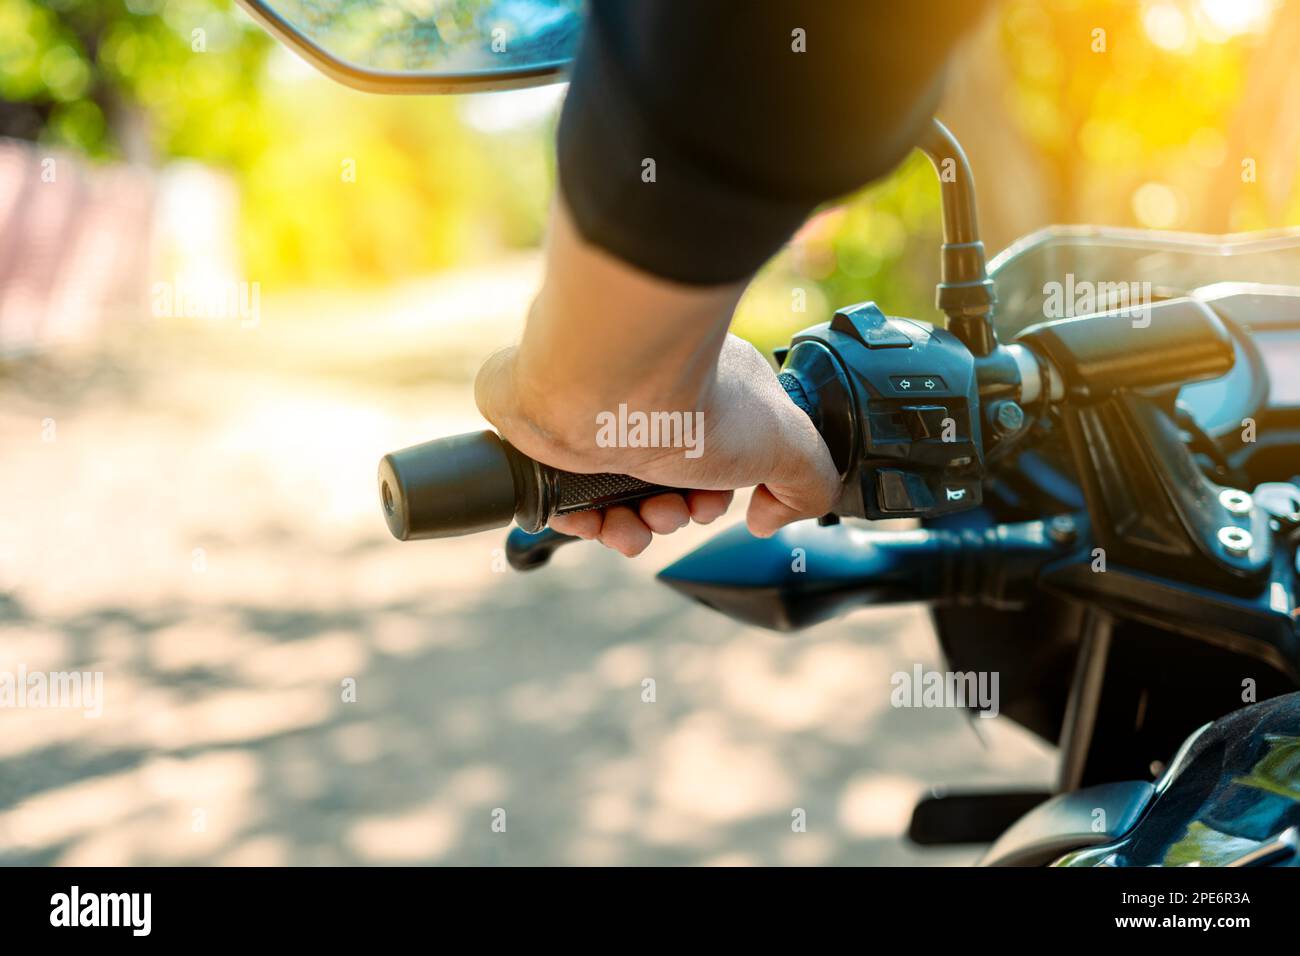 Mani di un motociclista sul manubrio, primo piano delle mani sul manubrio di una motocicletta. Mani di una persona sul manubrio della motocicletta. Foto Stock